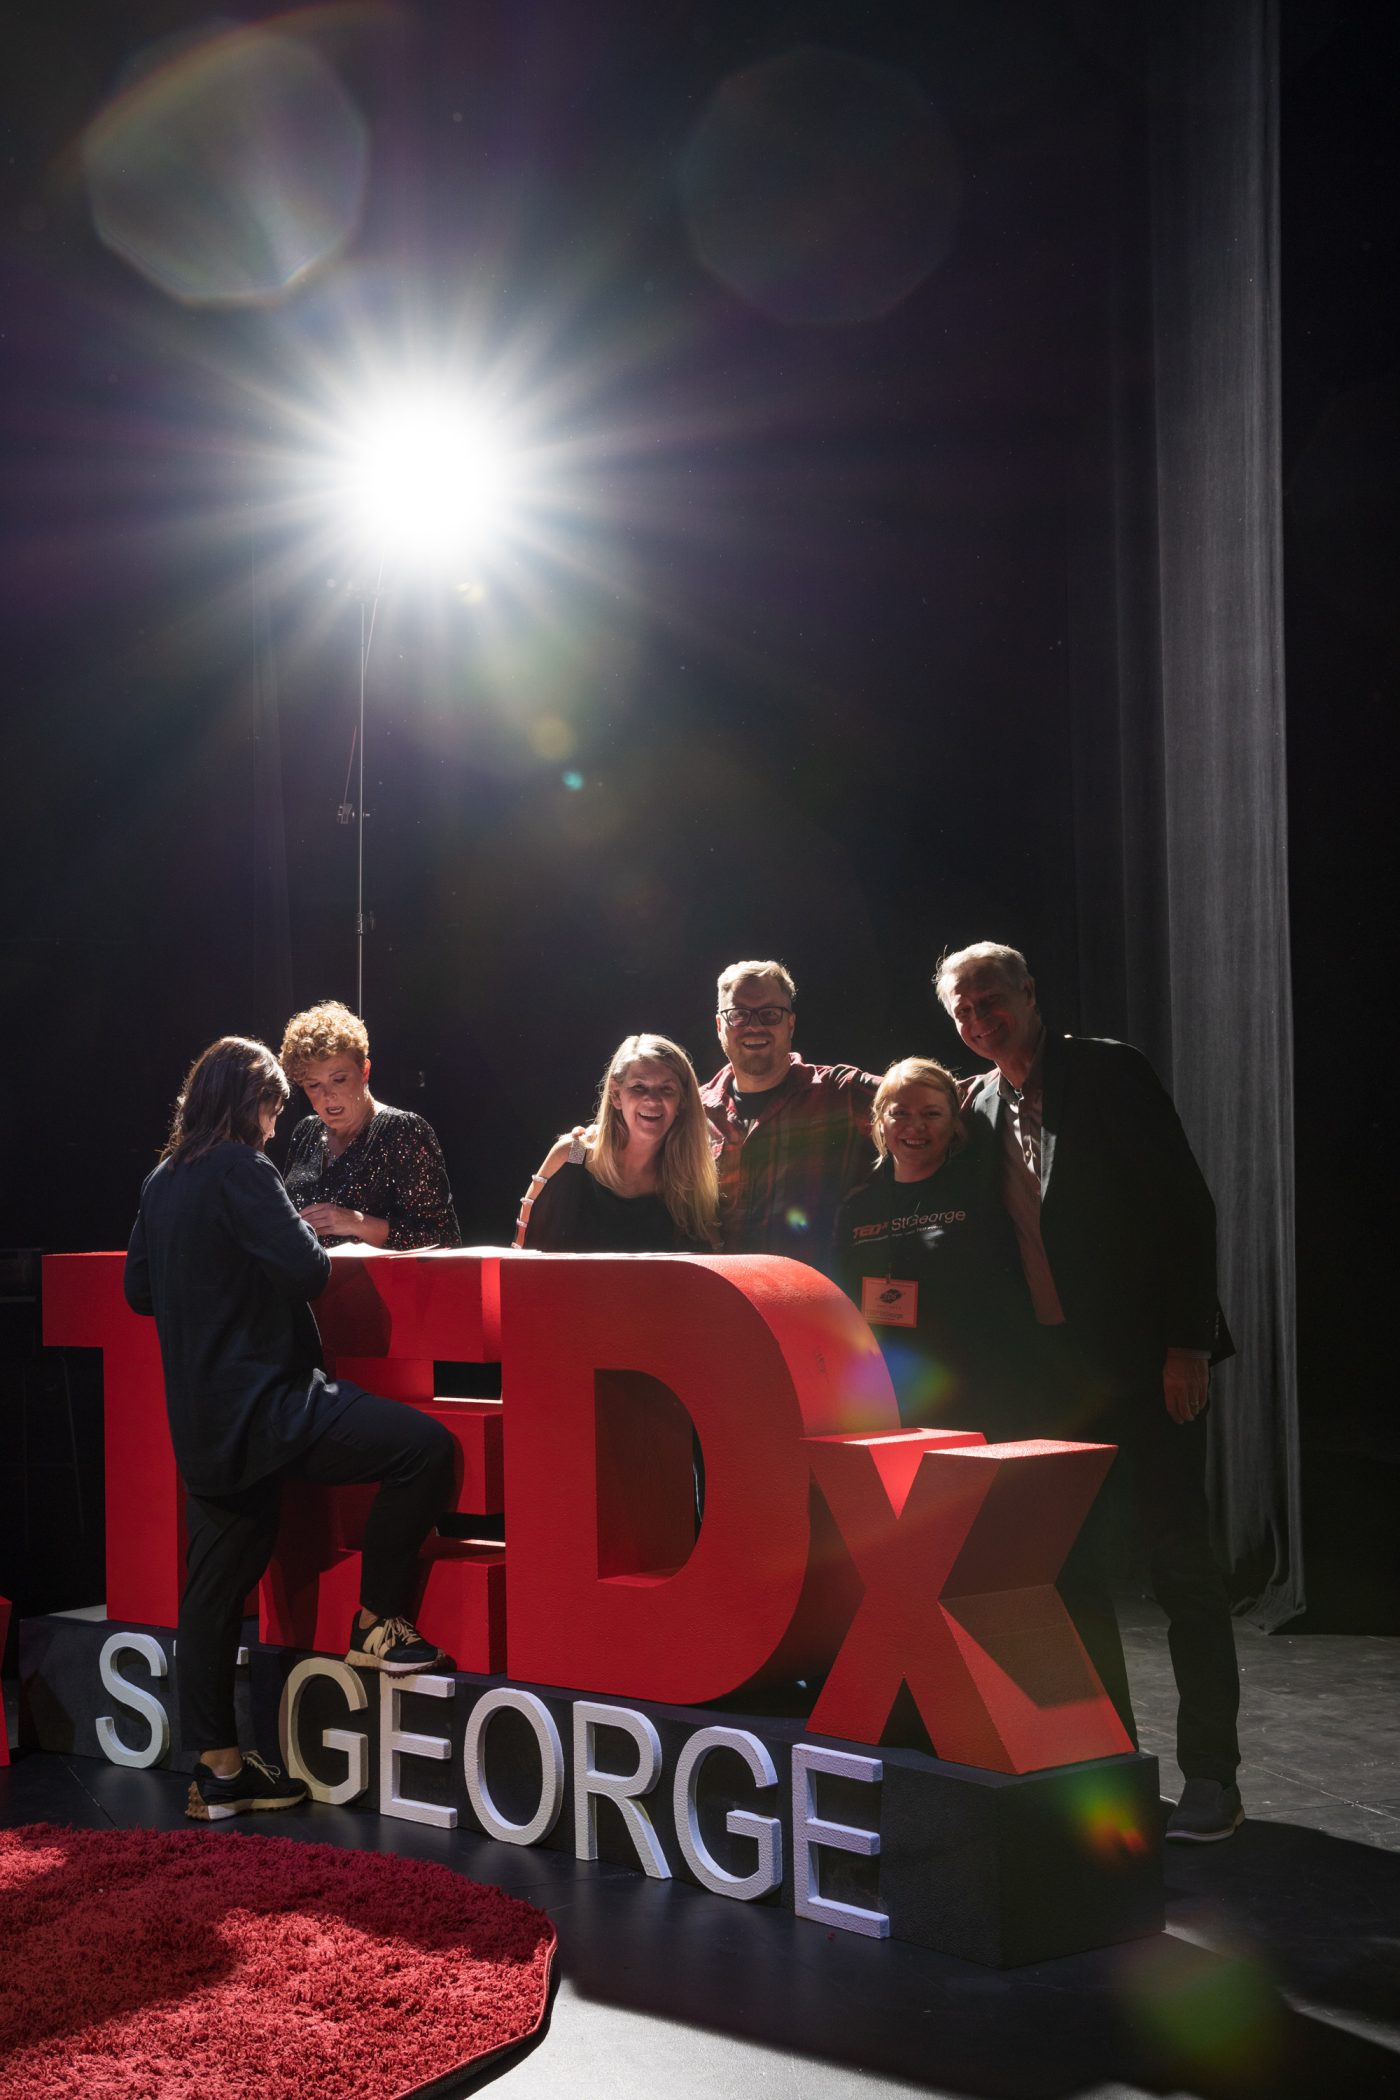 Backstage at TEDx Saint George